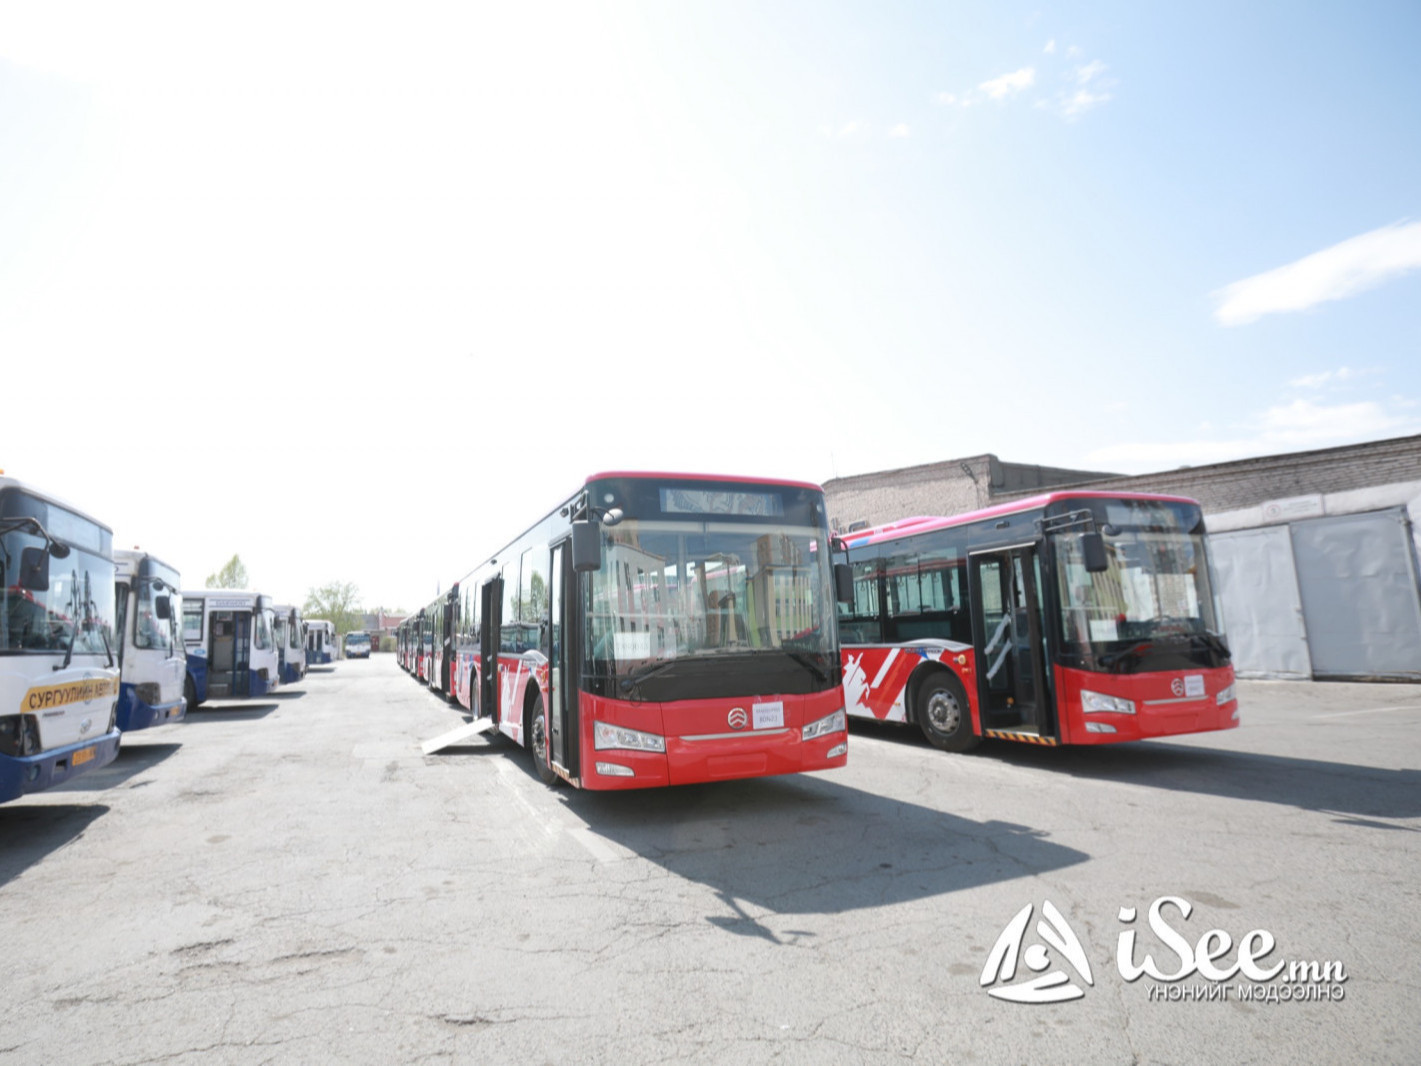 Маргааш гэхэд 30 шинэ автобусыг Замын-Үүдээс Улаанбаатарт авч ирнэ гэв